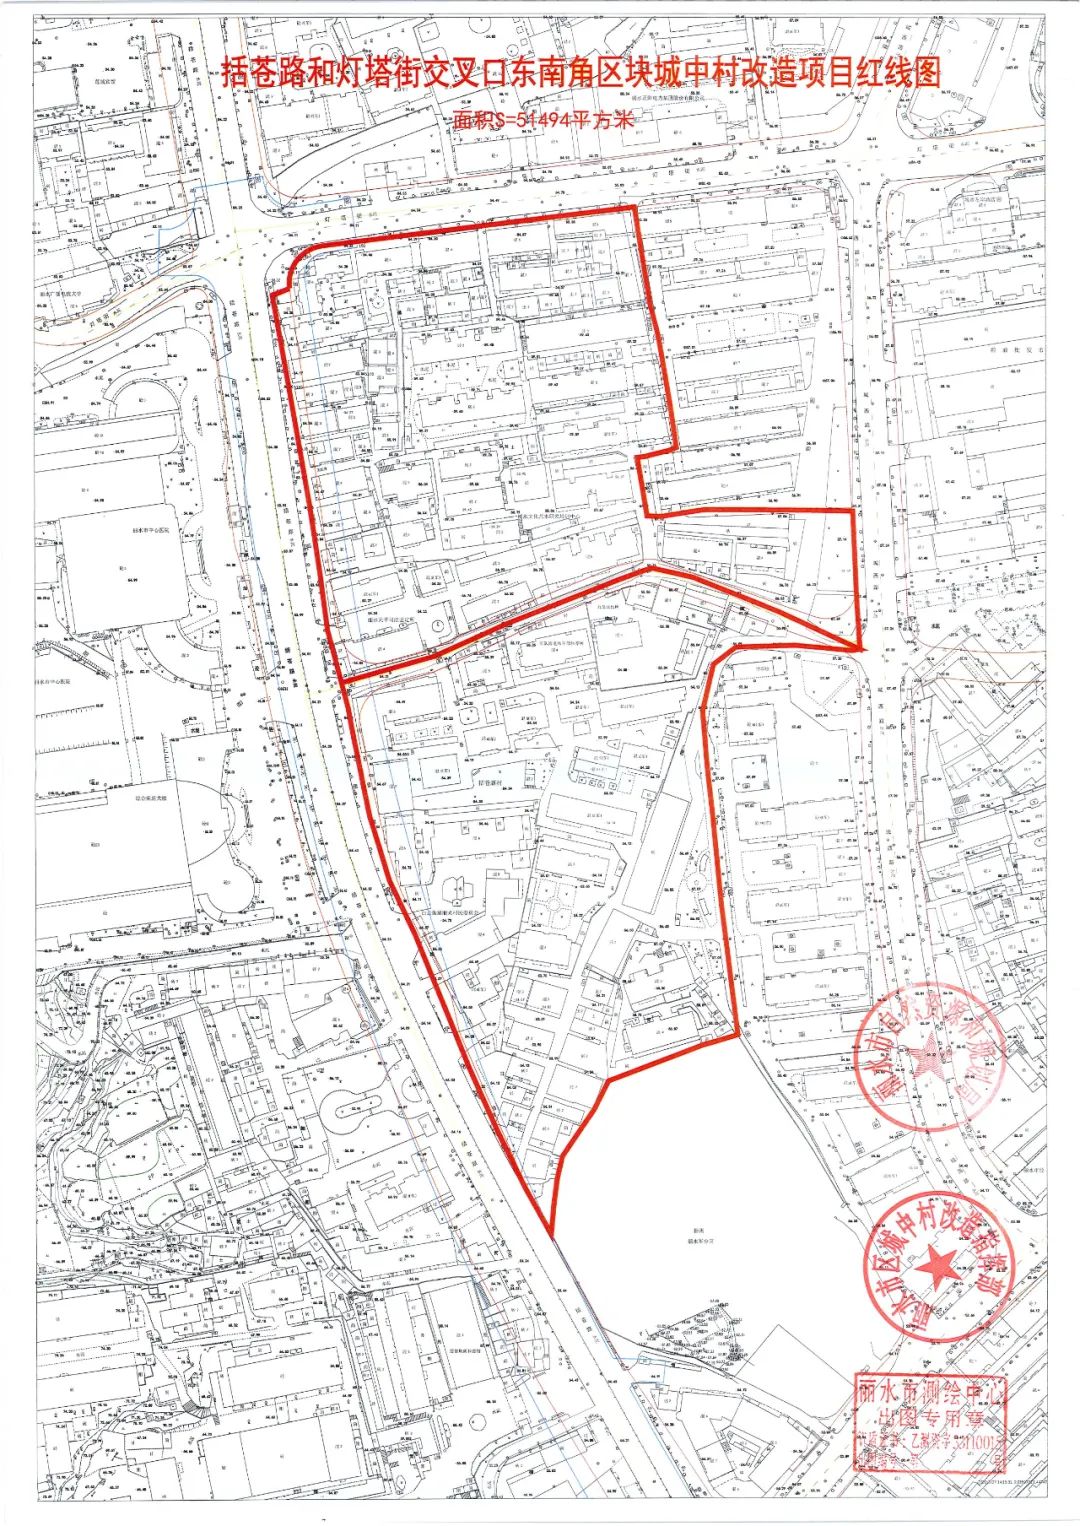 拟对关于括苍路以西万象山脚区块城中村改造红线图范围内的国有土地上